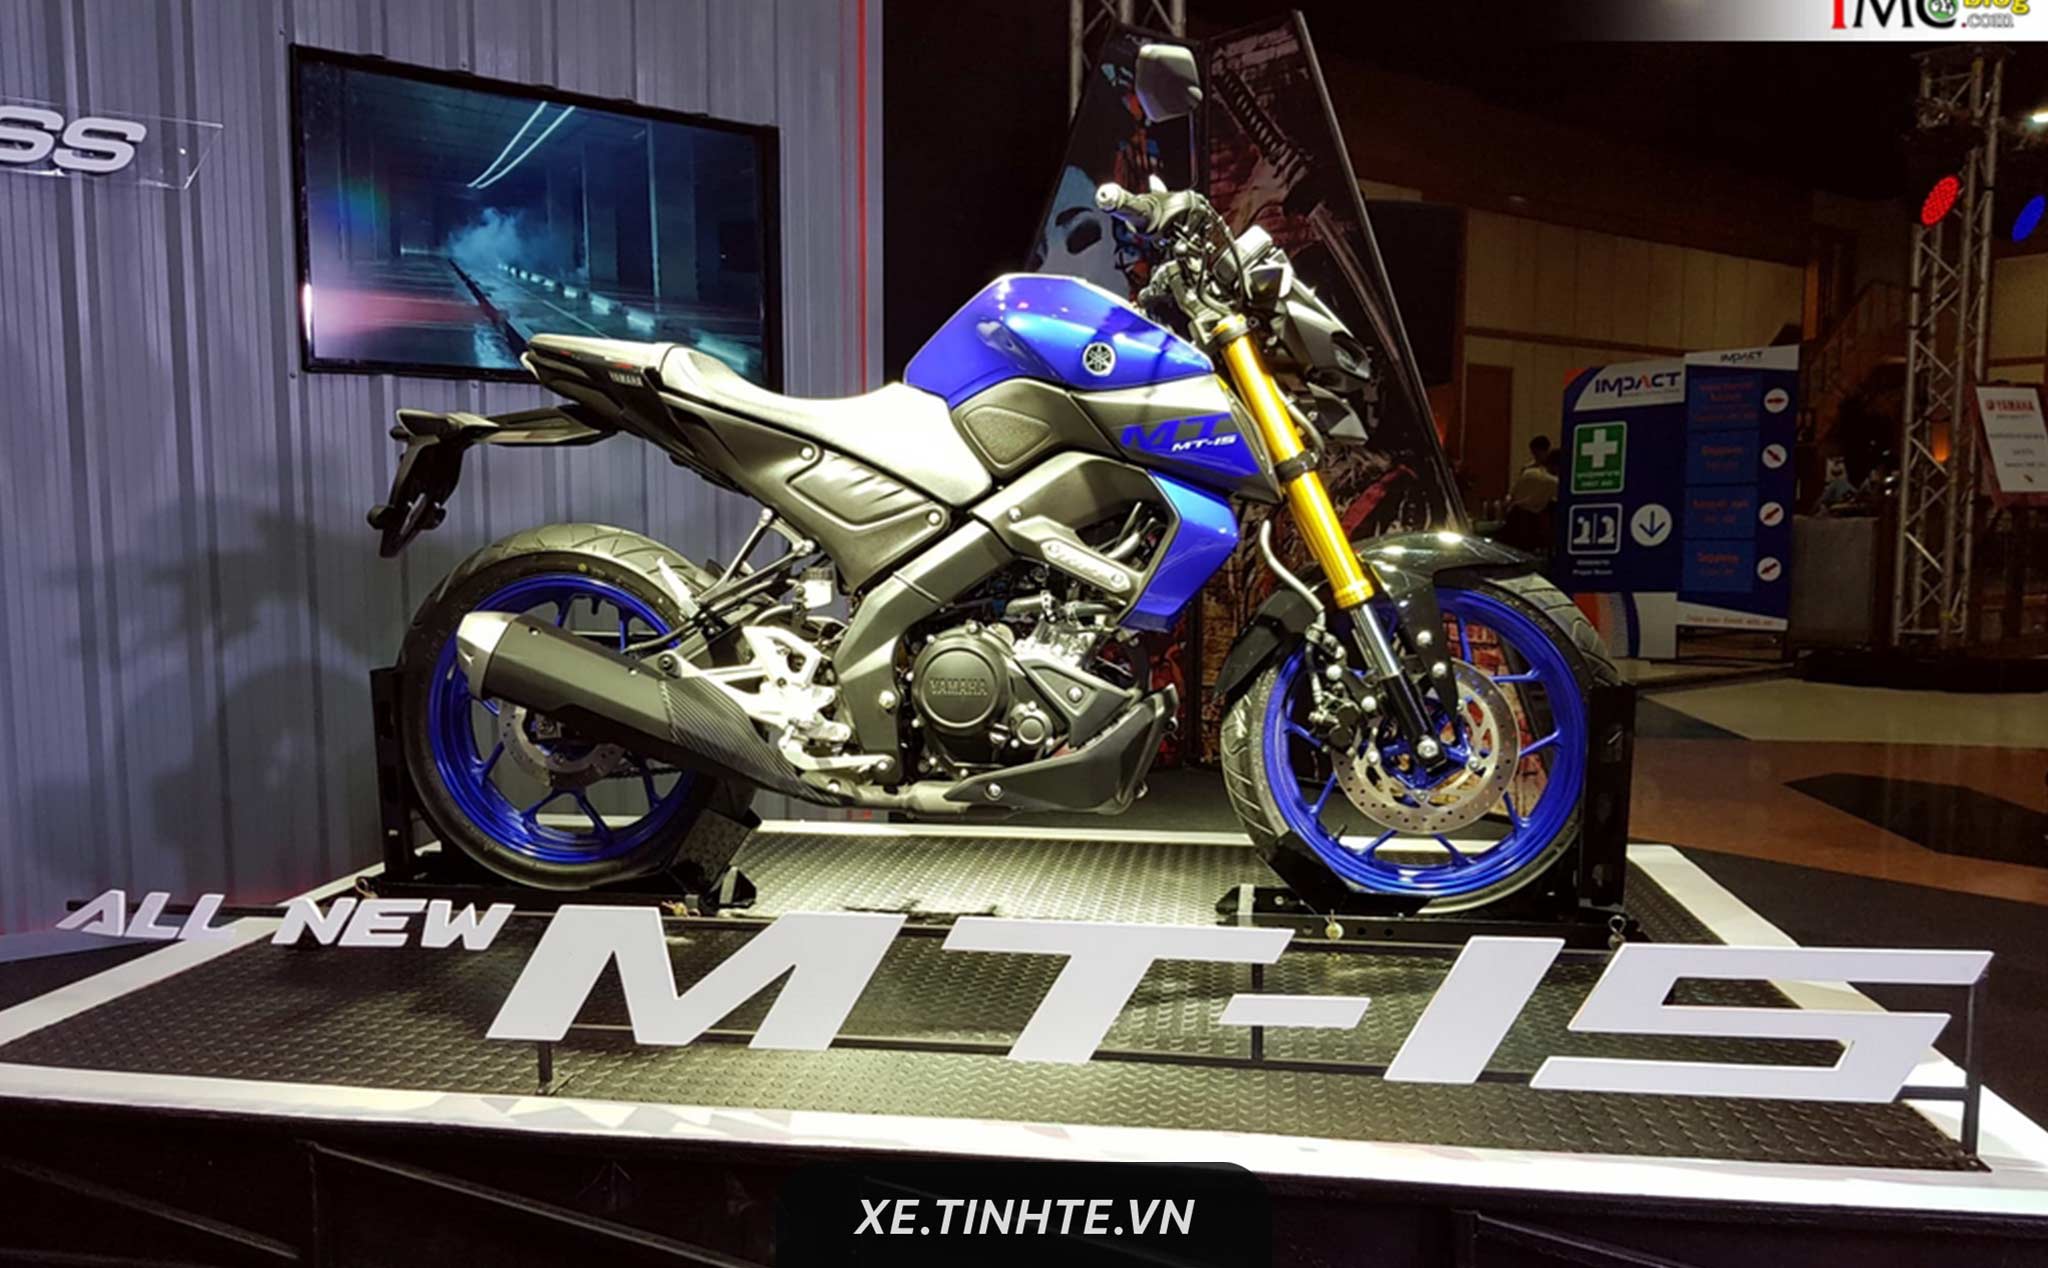 Yamaha ra mắt TFX 155 (MT15) hoàn toàn mới, bổ sung công nghệ VVA và bộ ly hợp chống trượt